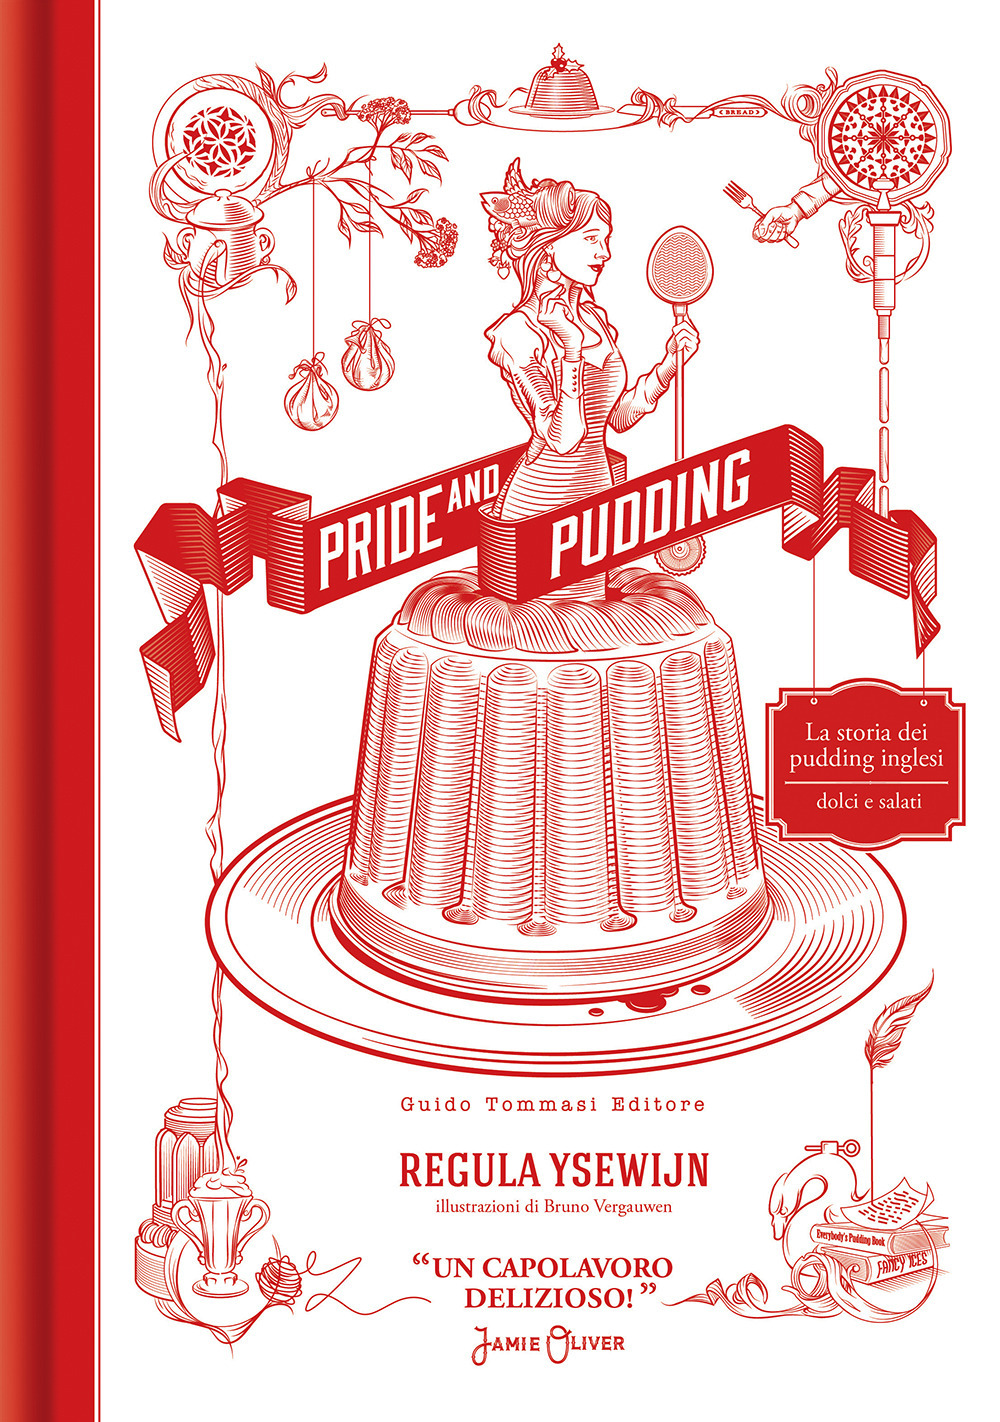 Libri Ysewijn Regula - Pride And Pudding NUOVO SIGILLATO, EDIZIONE DEL 04/11/2021 SUBITO DISPONIBILE